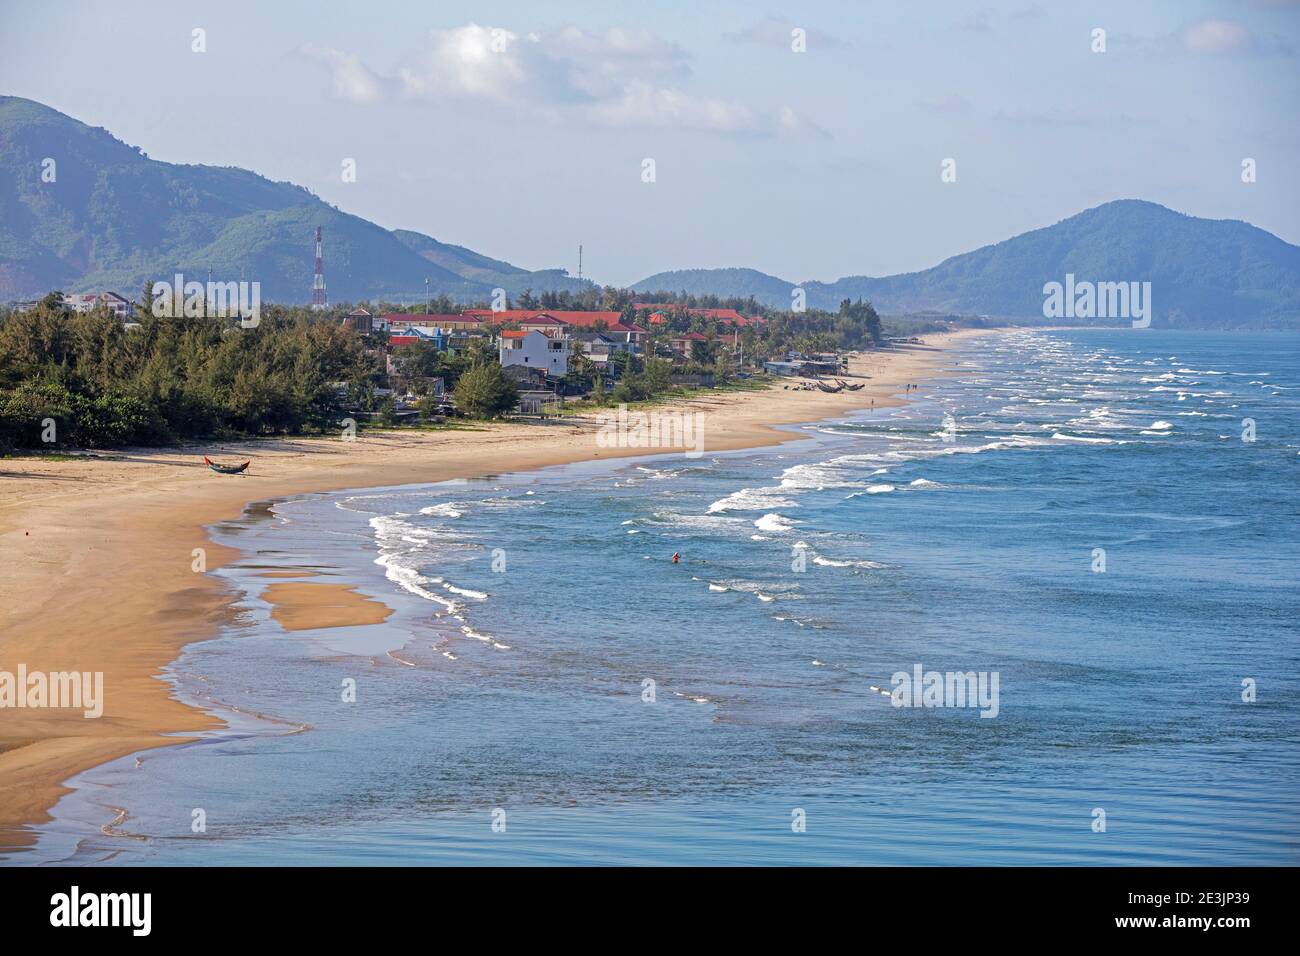 Lăng Cô / Lang Co beach along National Road 1 near Hai Van Pass, Phu Loc District, Thừa Thiên-Huế Province, central Vietnam Stock Photo